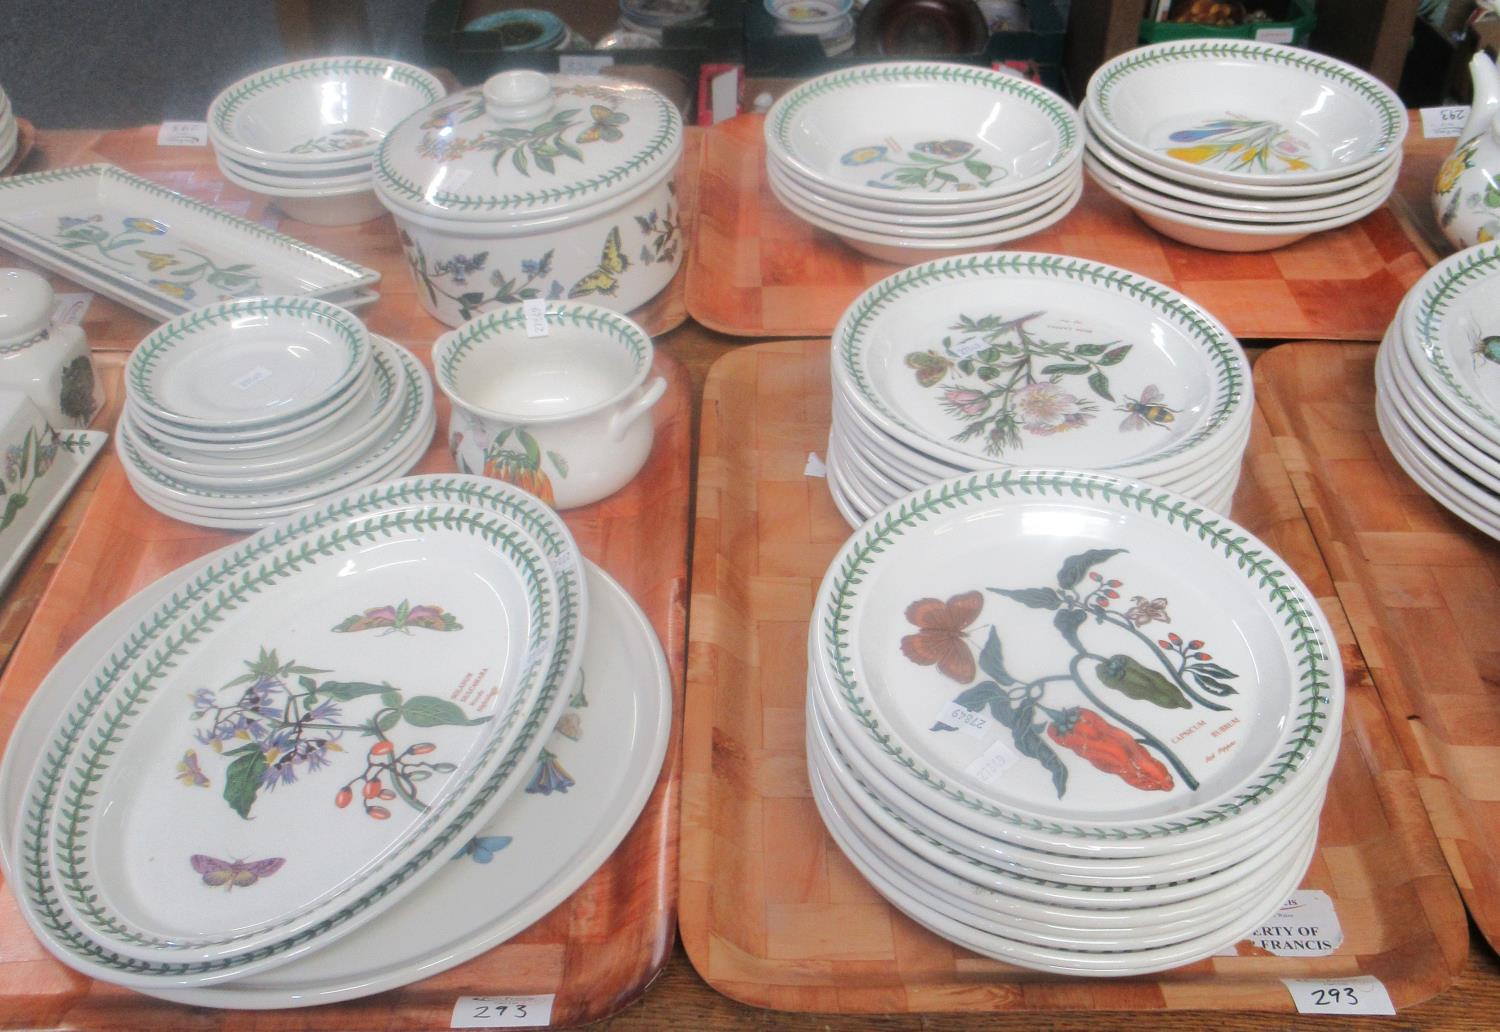 Ten trays of Portmeirion dinnerware etc. comprising: 'Botanic Garden' dinner plates, side plates, - Image 3 of 4